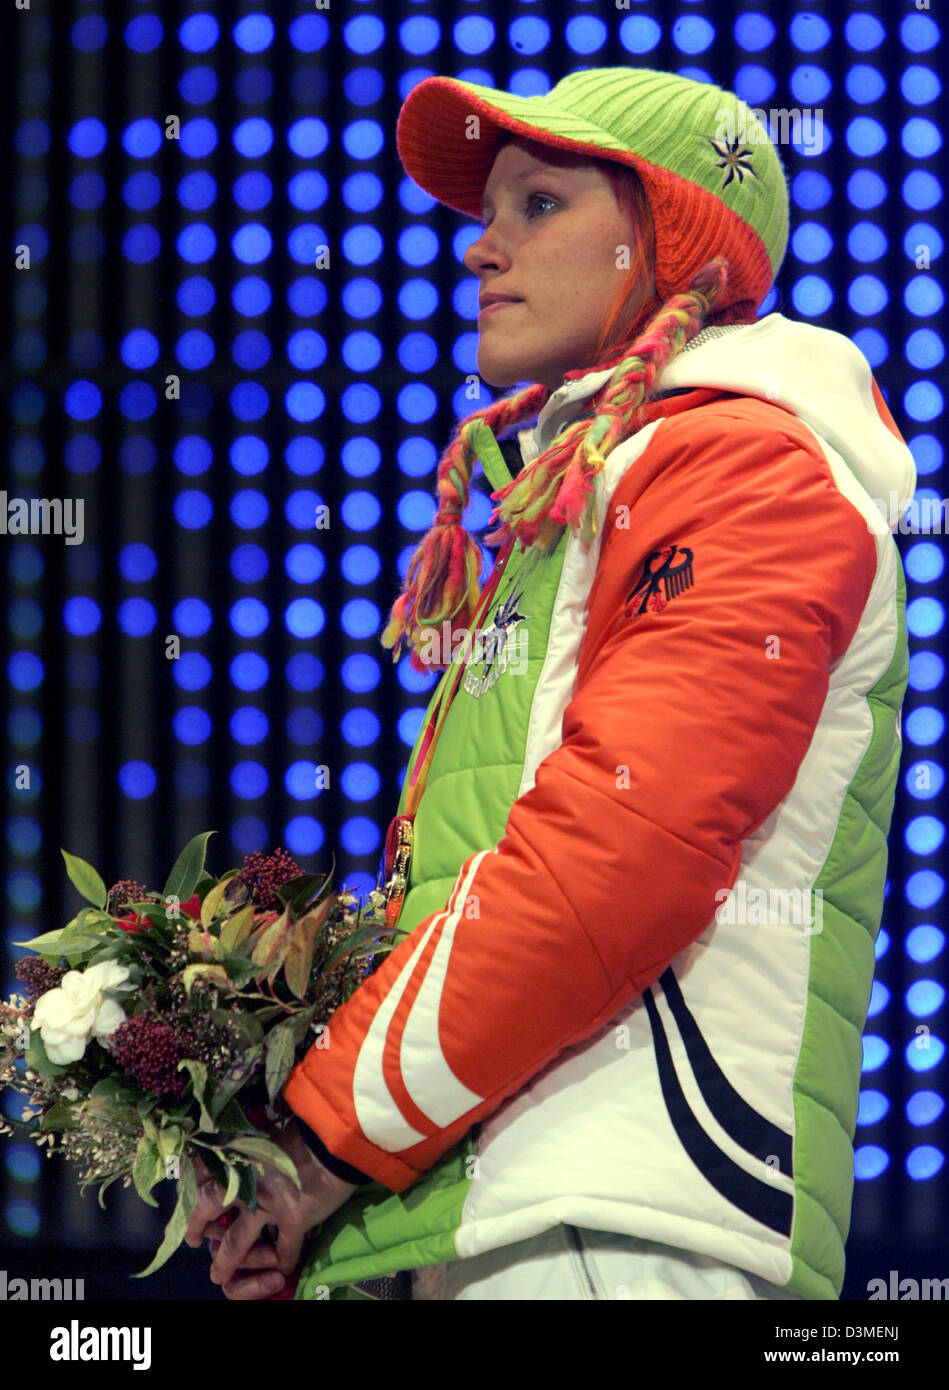 La biathlète Allemande Kati Wilhelm est représenté sur le podium lors de la cérémonie de remise des prix à Turin, Italie, fin samedi 18 février 2006. Wilhelm battre sa coéquipière Martina Glagow et Albina Akhatova russe dans les Jeux Olympiques d'hiver de 2006 à 10 kilomètres de la concurrence. Photo : Frank May Banque D'Images